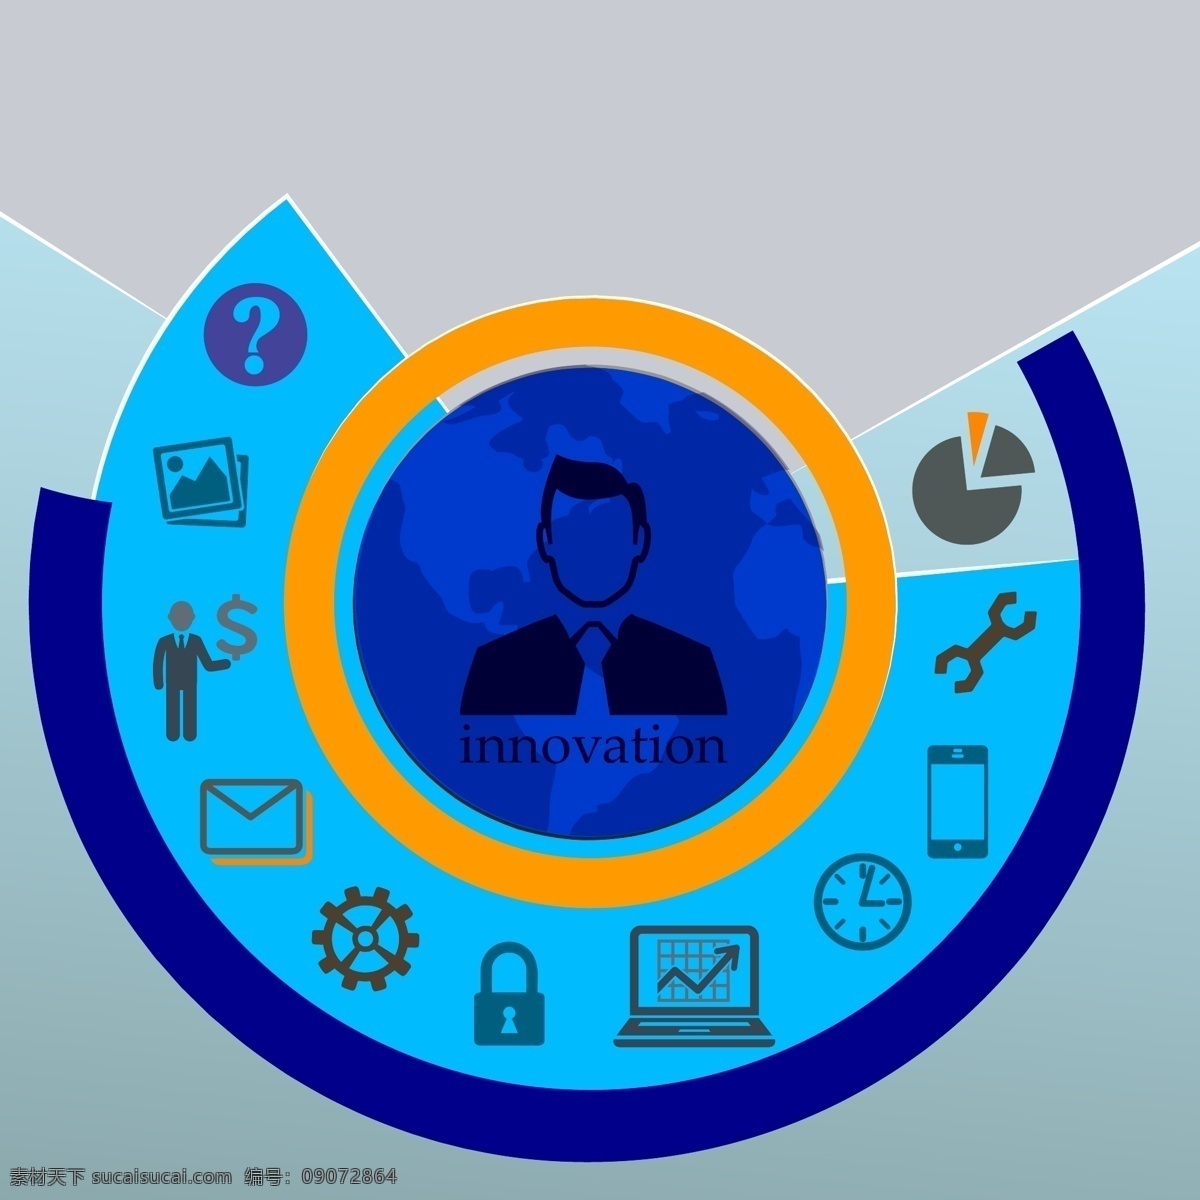 创新 信息 图 模板 信息图 ui图标 蓝色圆圈 信息图表 图标设计 商务园 工具 修理 维修 邮件 锁 数据 时间 时钟 手机